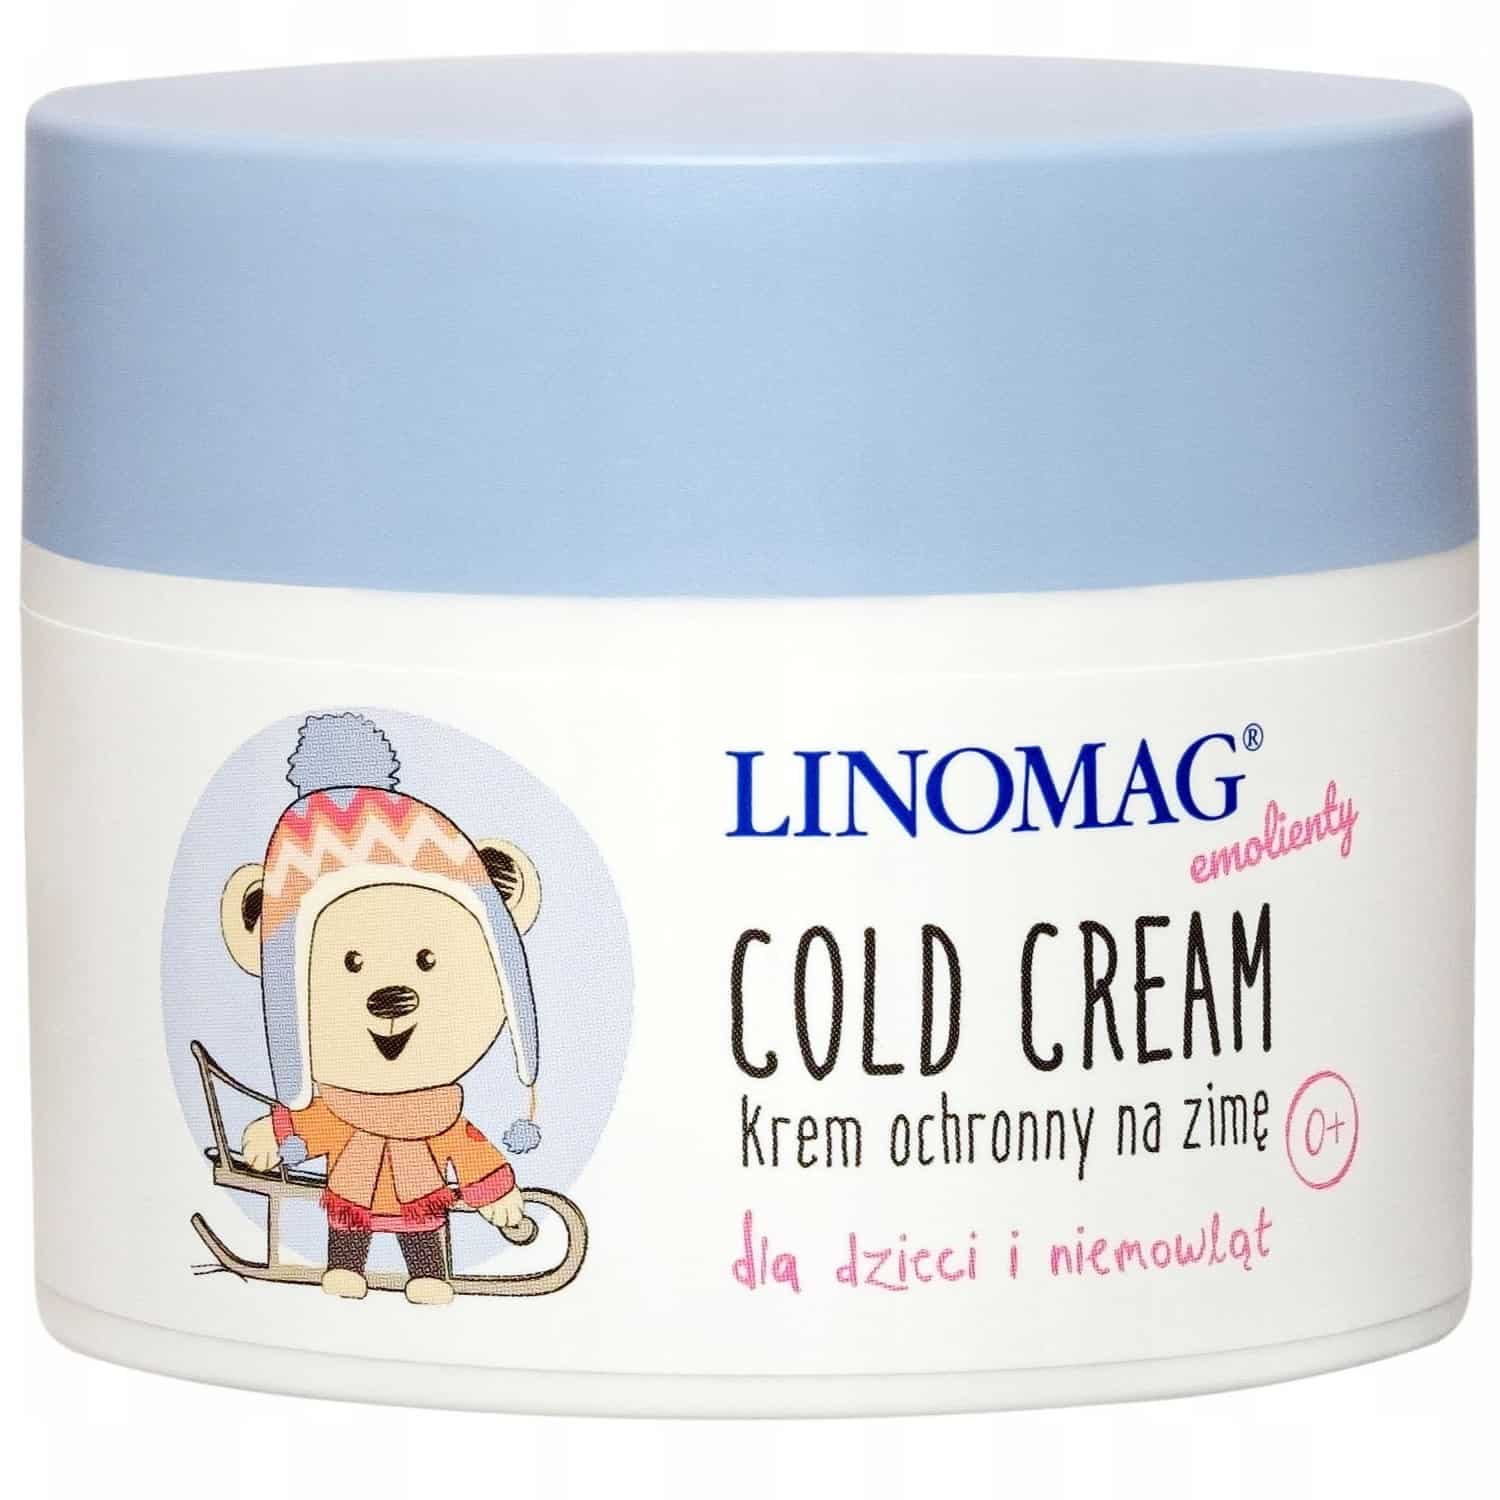 Linomag Emolienty Cold Cream, krem ochronny na zimę dla dzieci i niemowląt, Matka Aptekarka fb